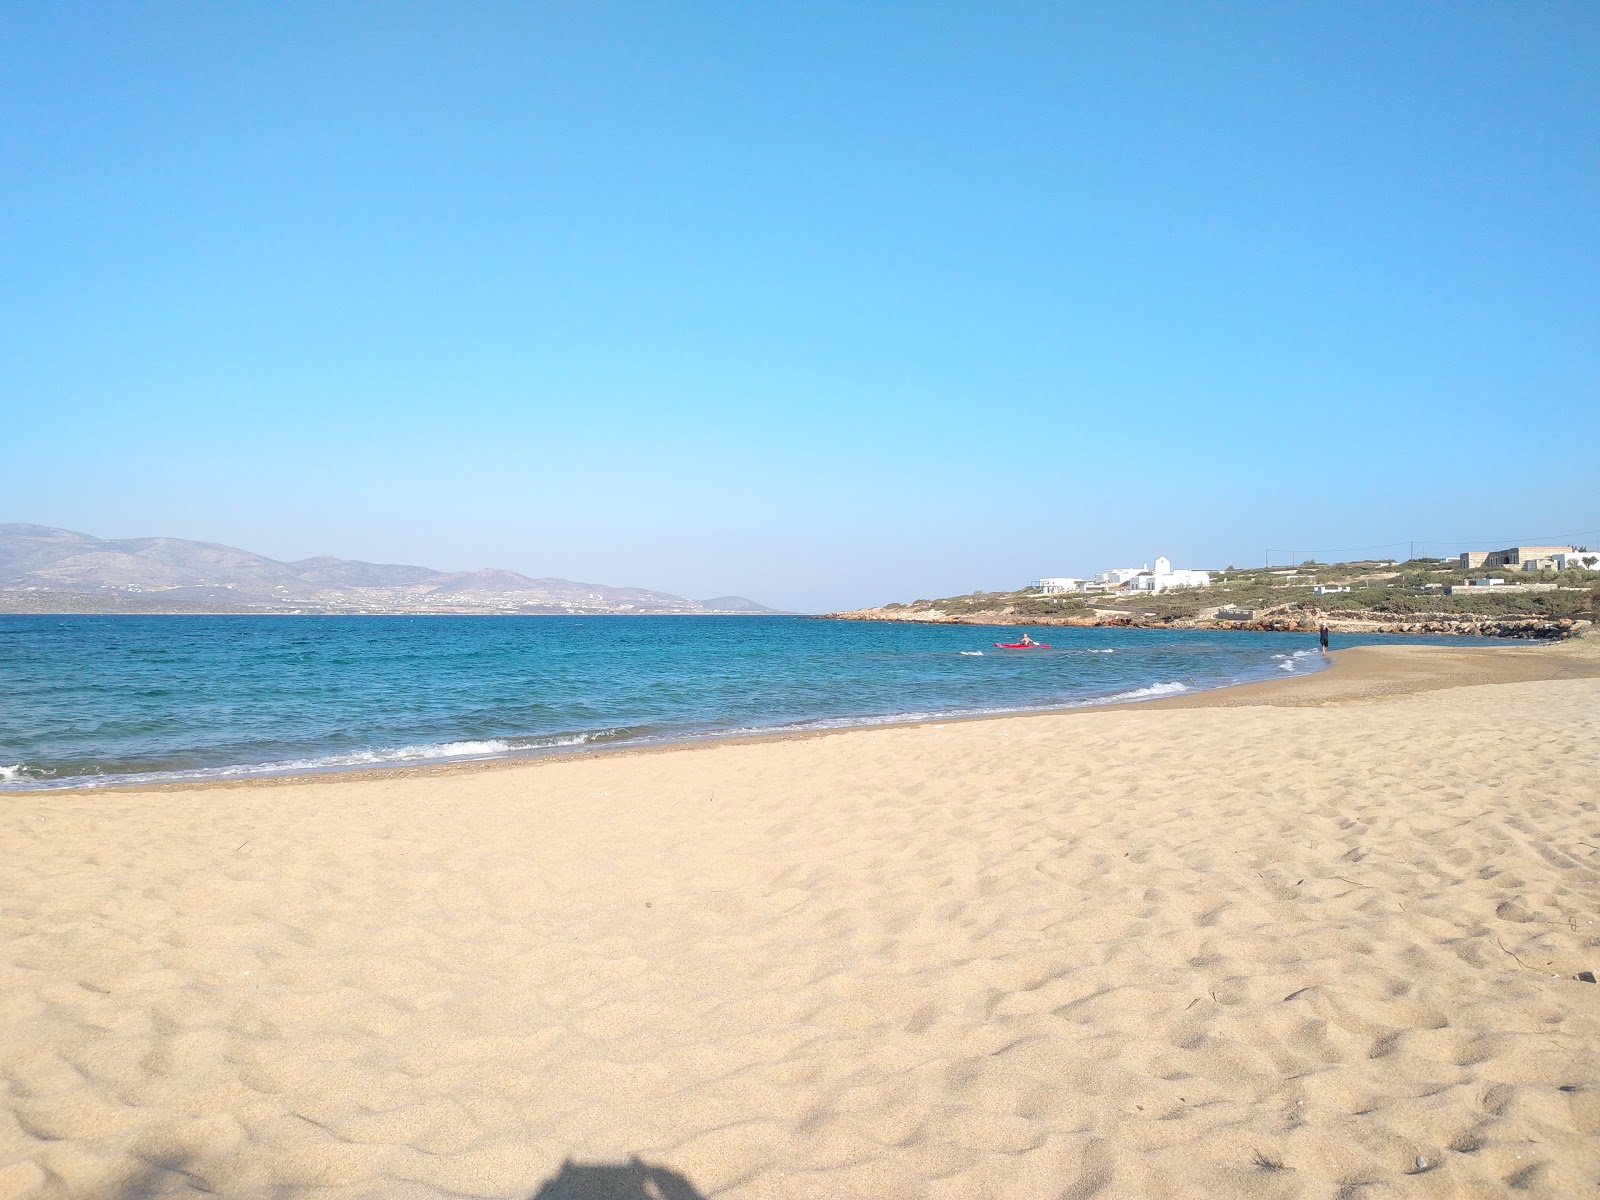 Glyfa beach'in fotoğrafı kahverengi kum yüzey ile